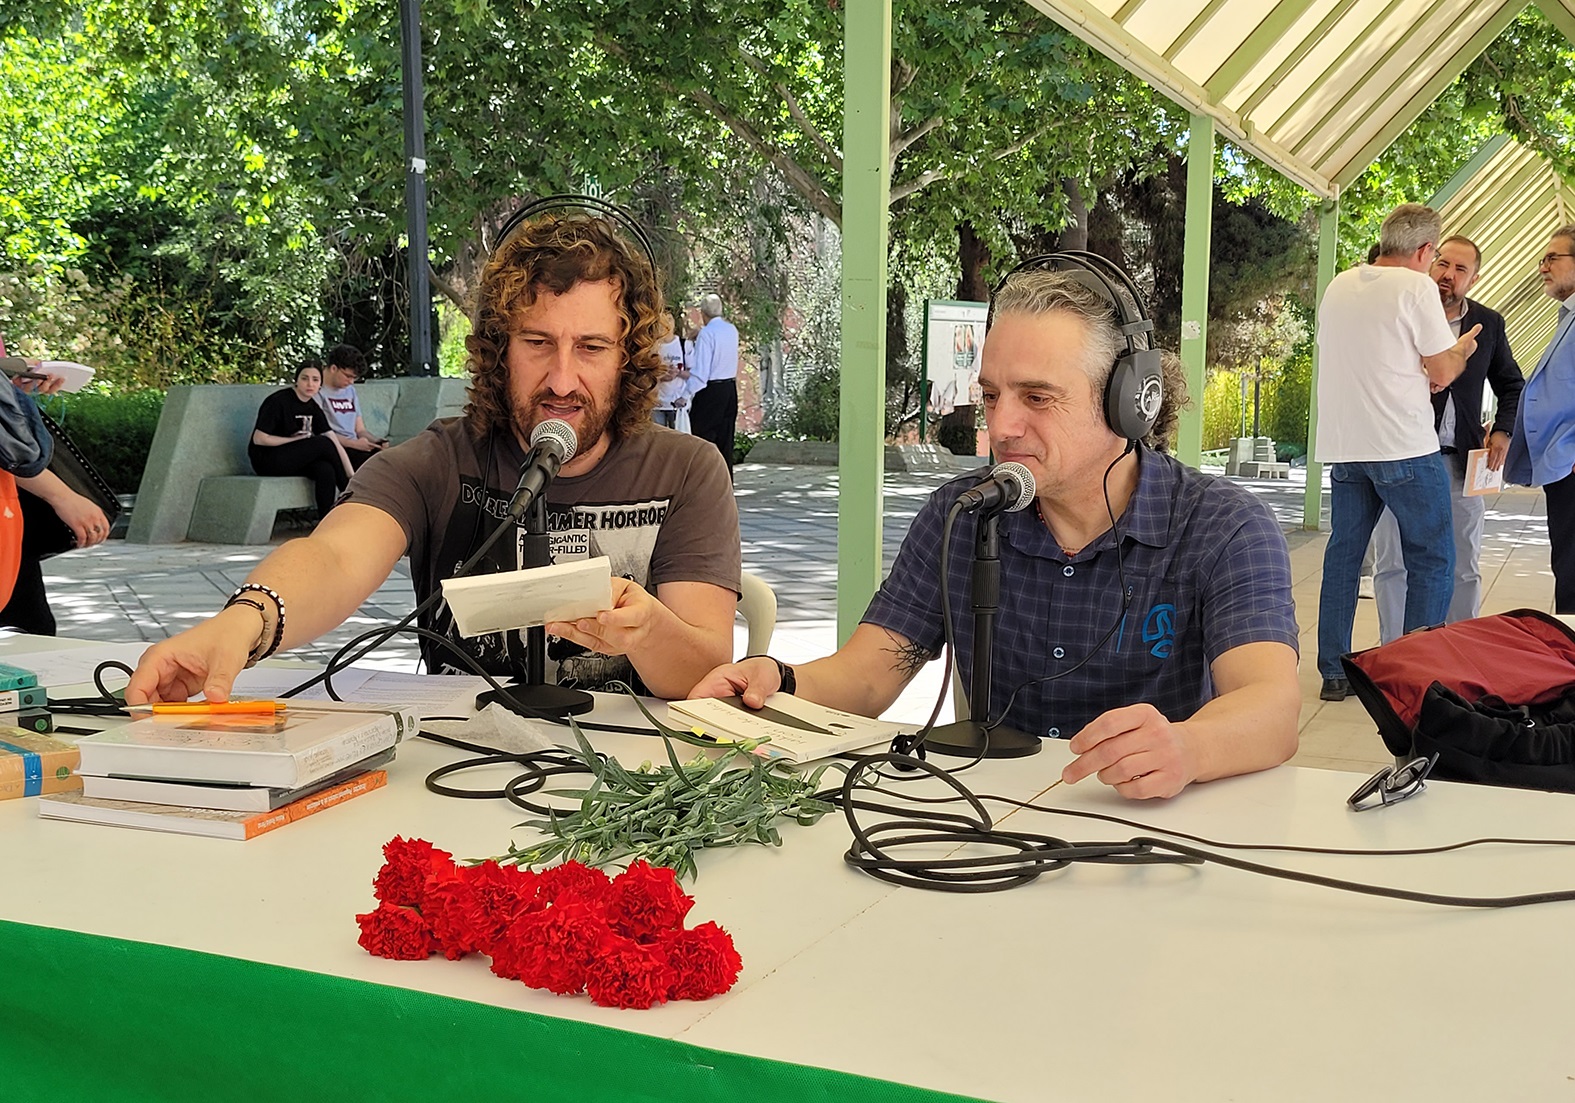 Divulgación científica y cultura en la nueva temporada de UniRadio Jaén